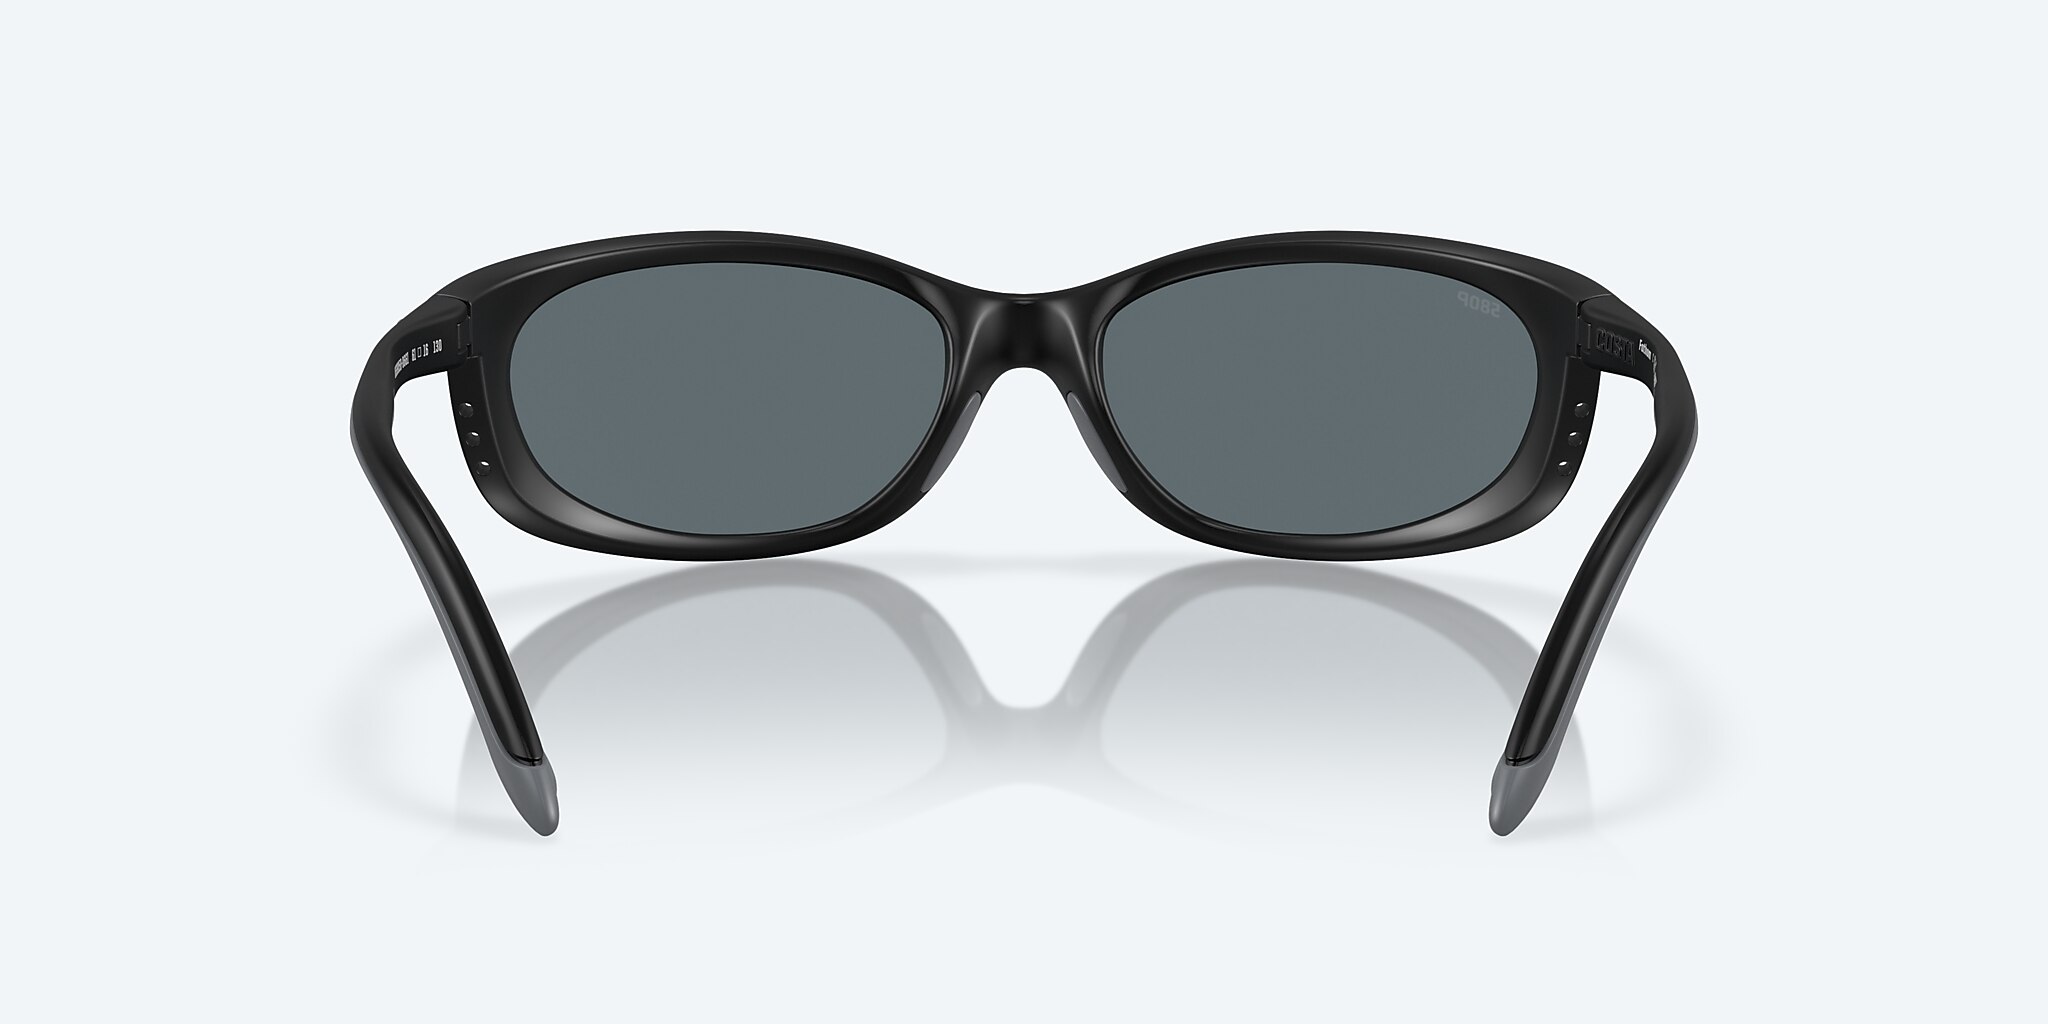 Fathom Polarized Sunglasses in Blue Mirror